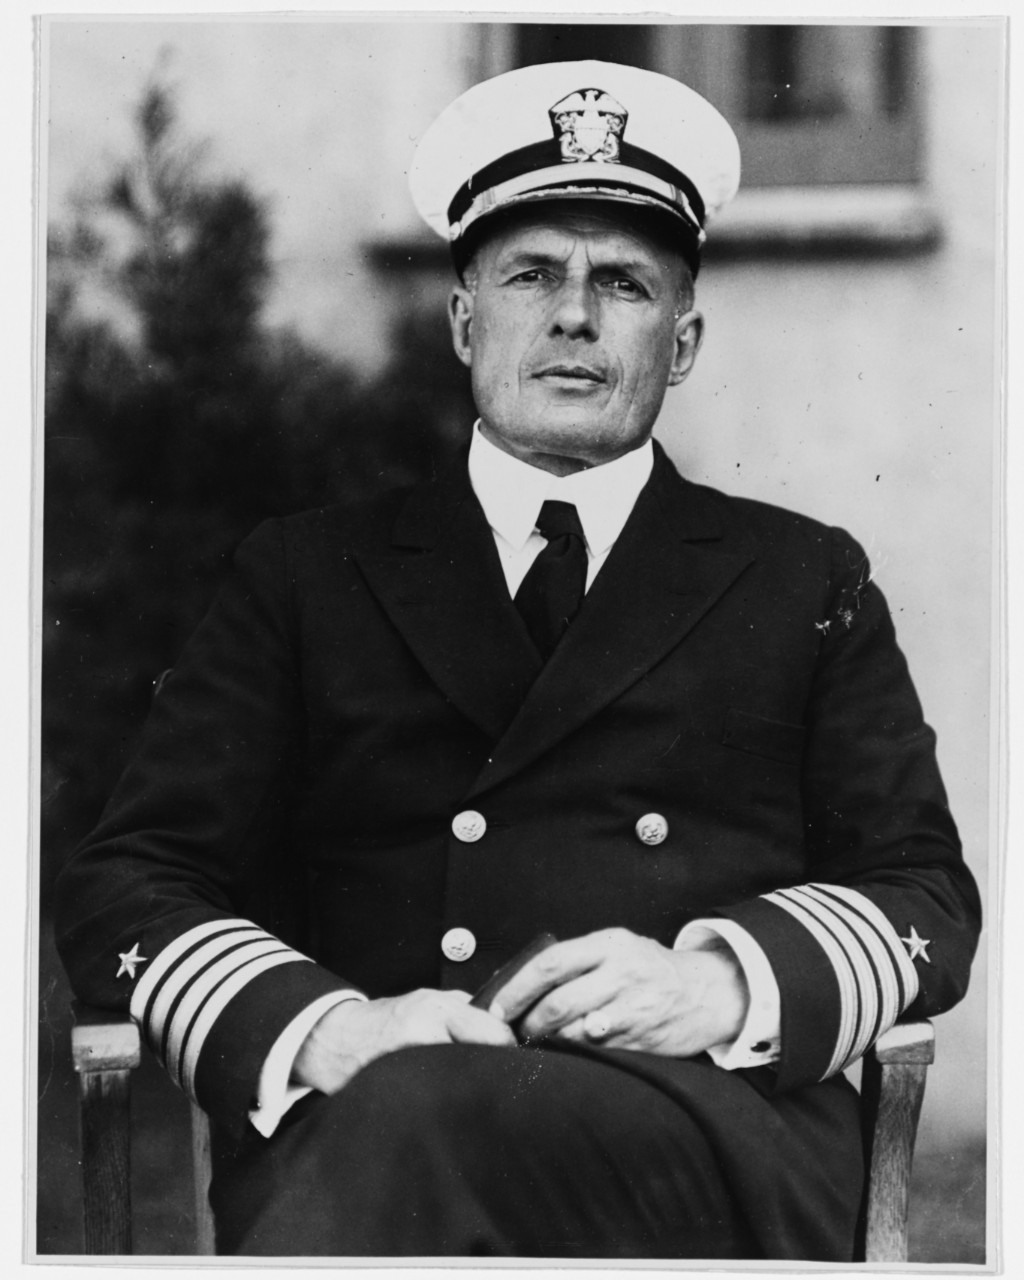 Captain Thomas T. Craven, USN, 20 August 1923.